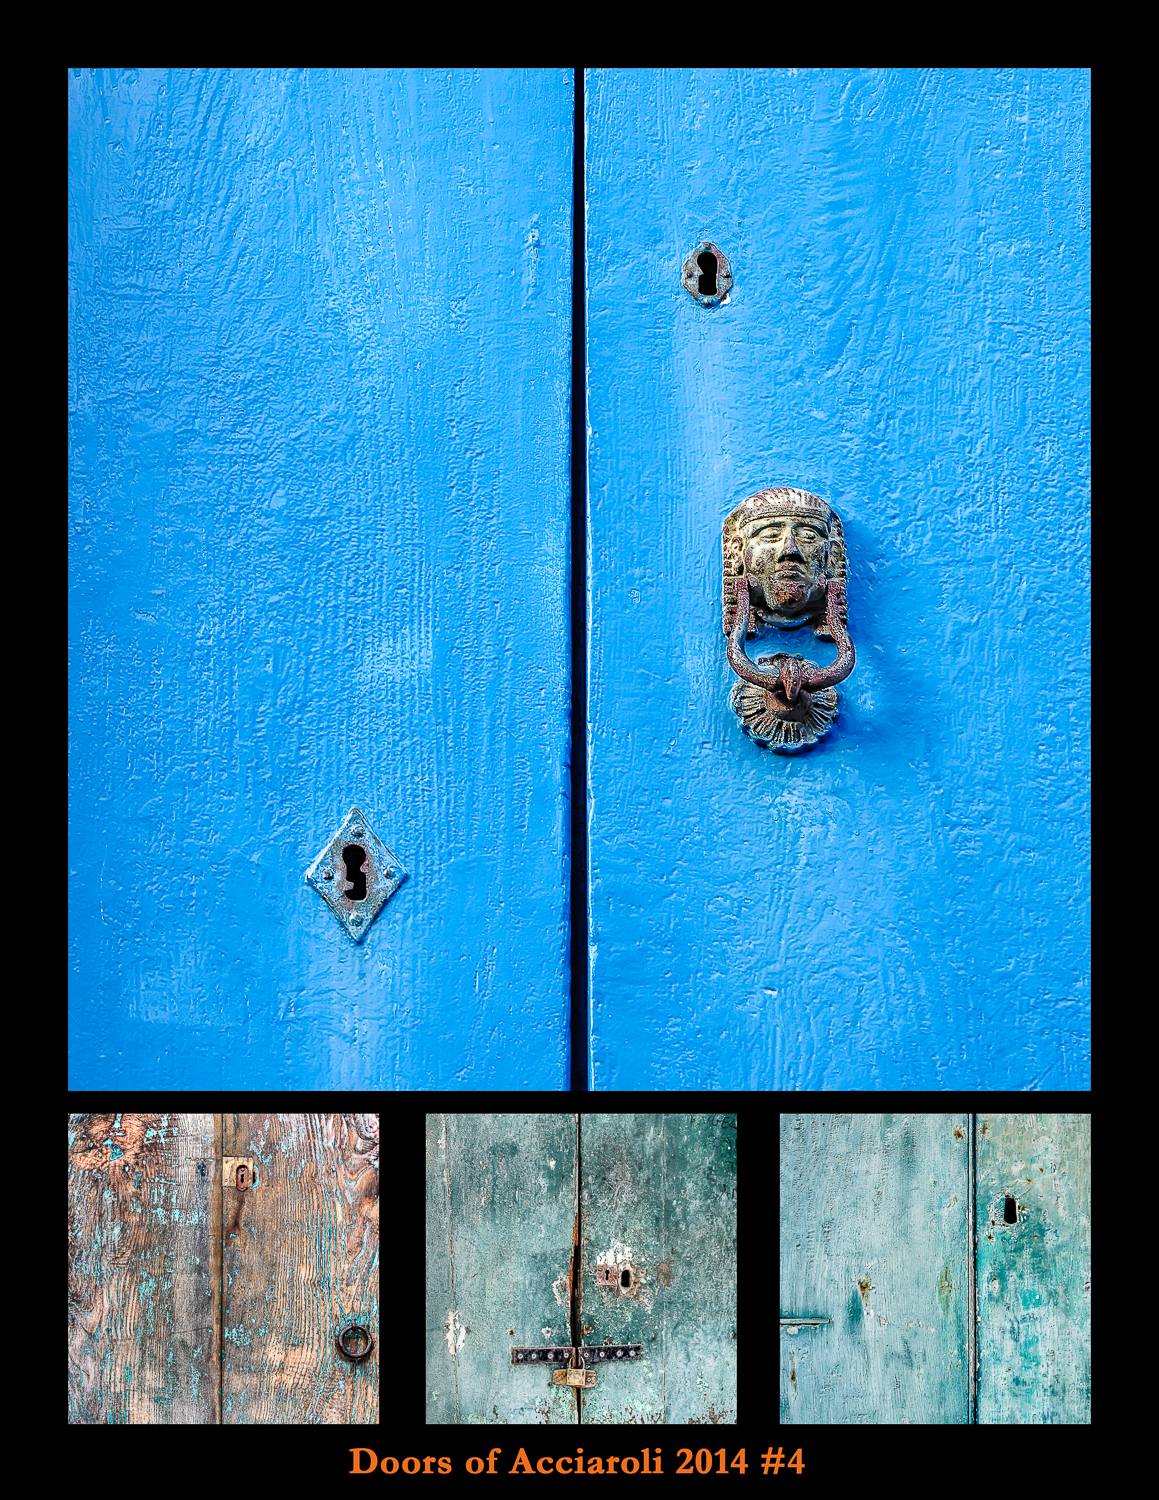 Doors of Acciaroli # 4